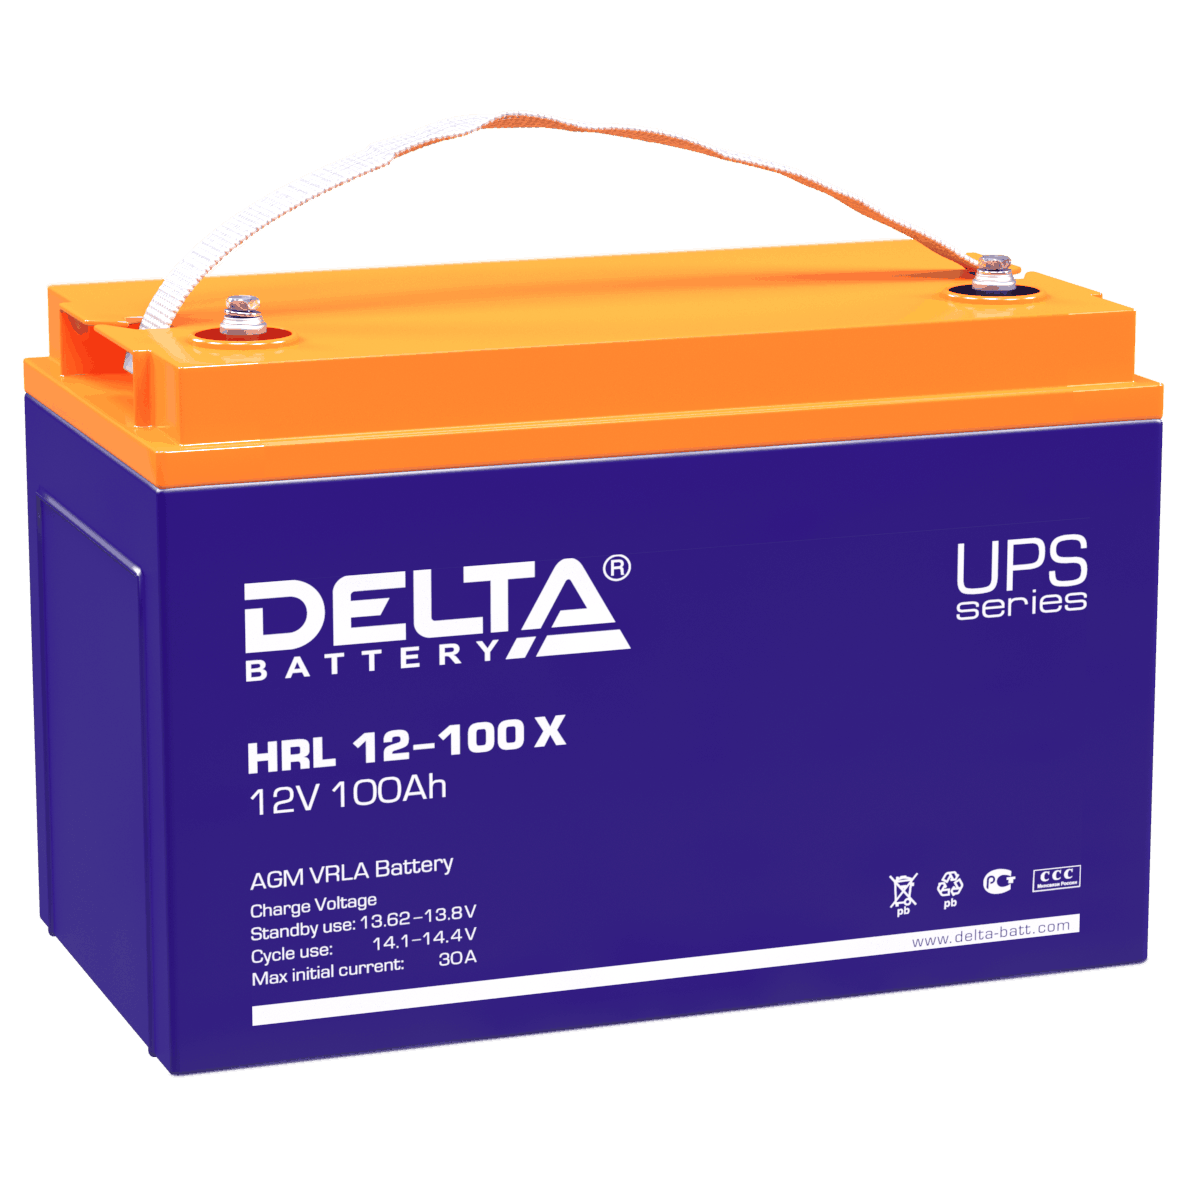 Все Батареи DELTA HRL 12-100 X видеонаблюдения в магазине Vidos Group